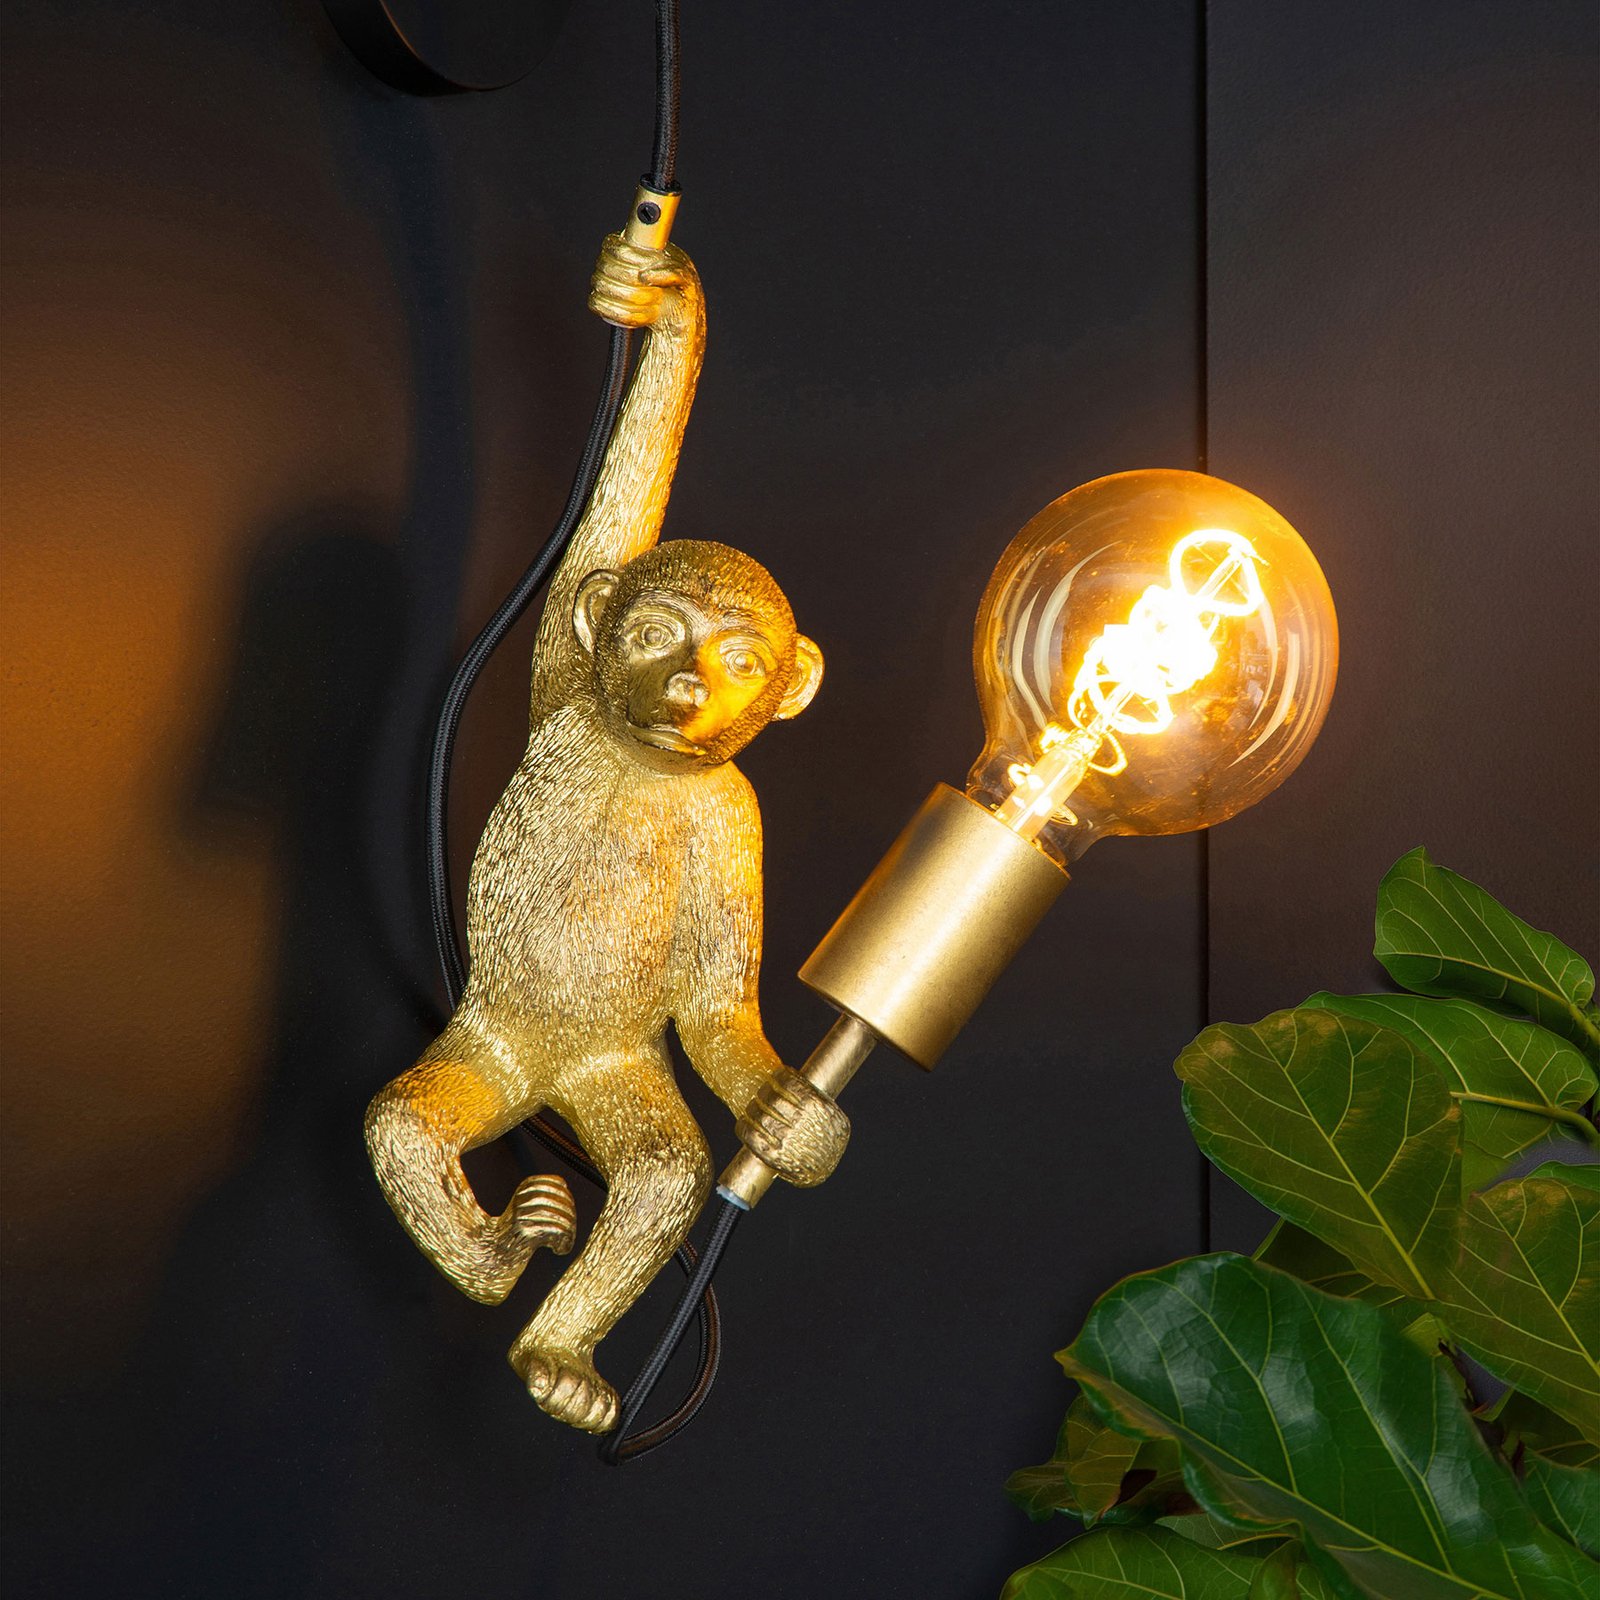 Extravaganza Chimp wandlamp, goud mat/zwart